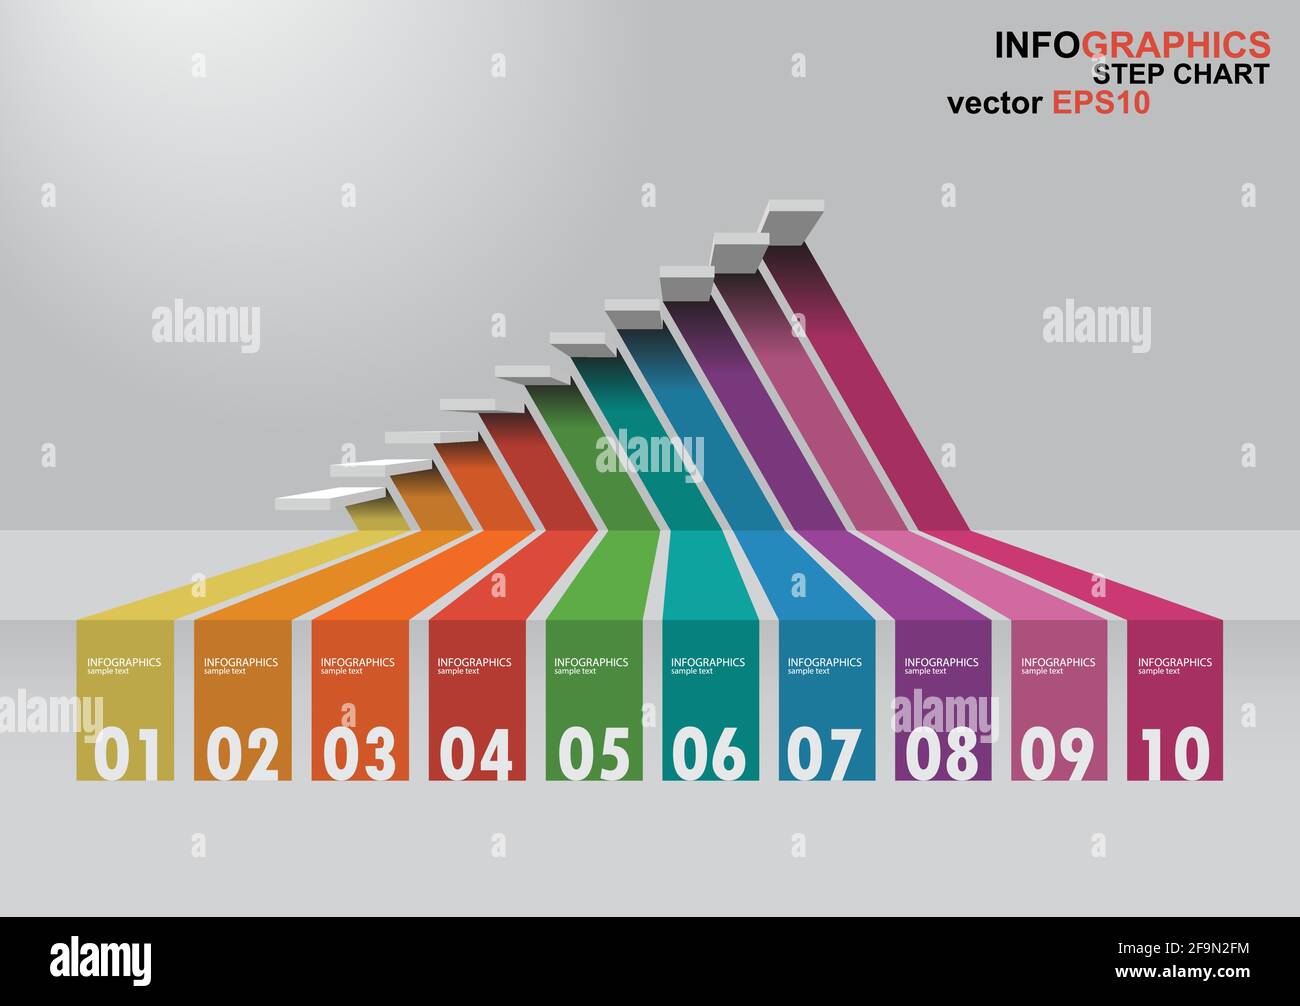 Die 3-dimensionale Treppe hat Schatten für EPS 10 Vektor Infografiken Stock Vektor